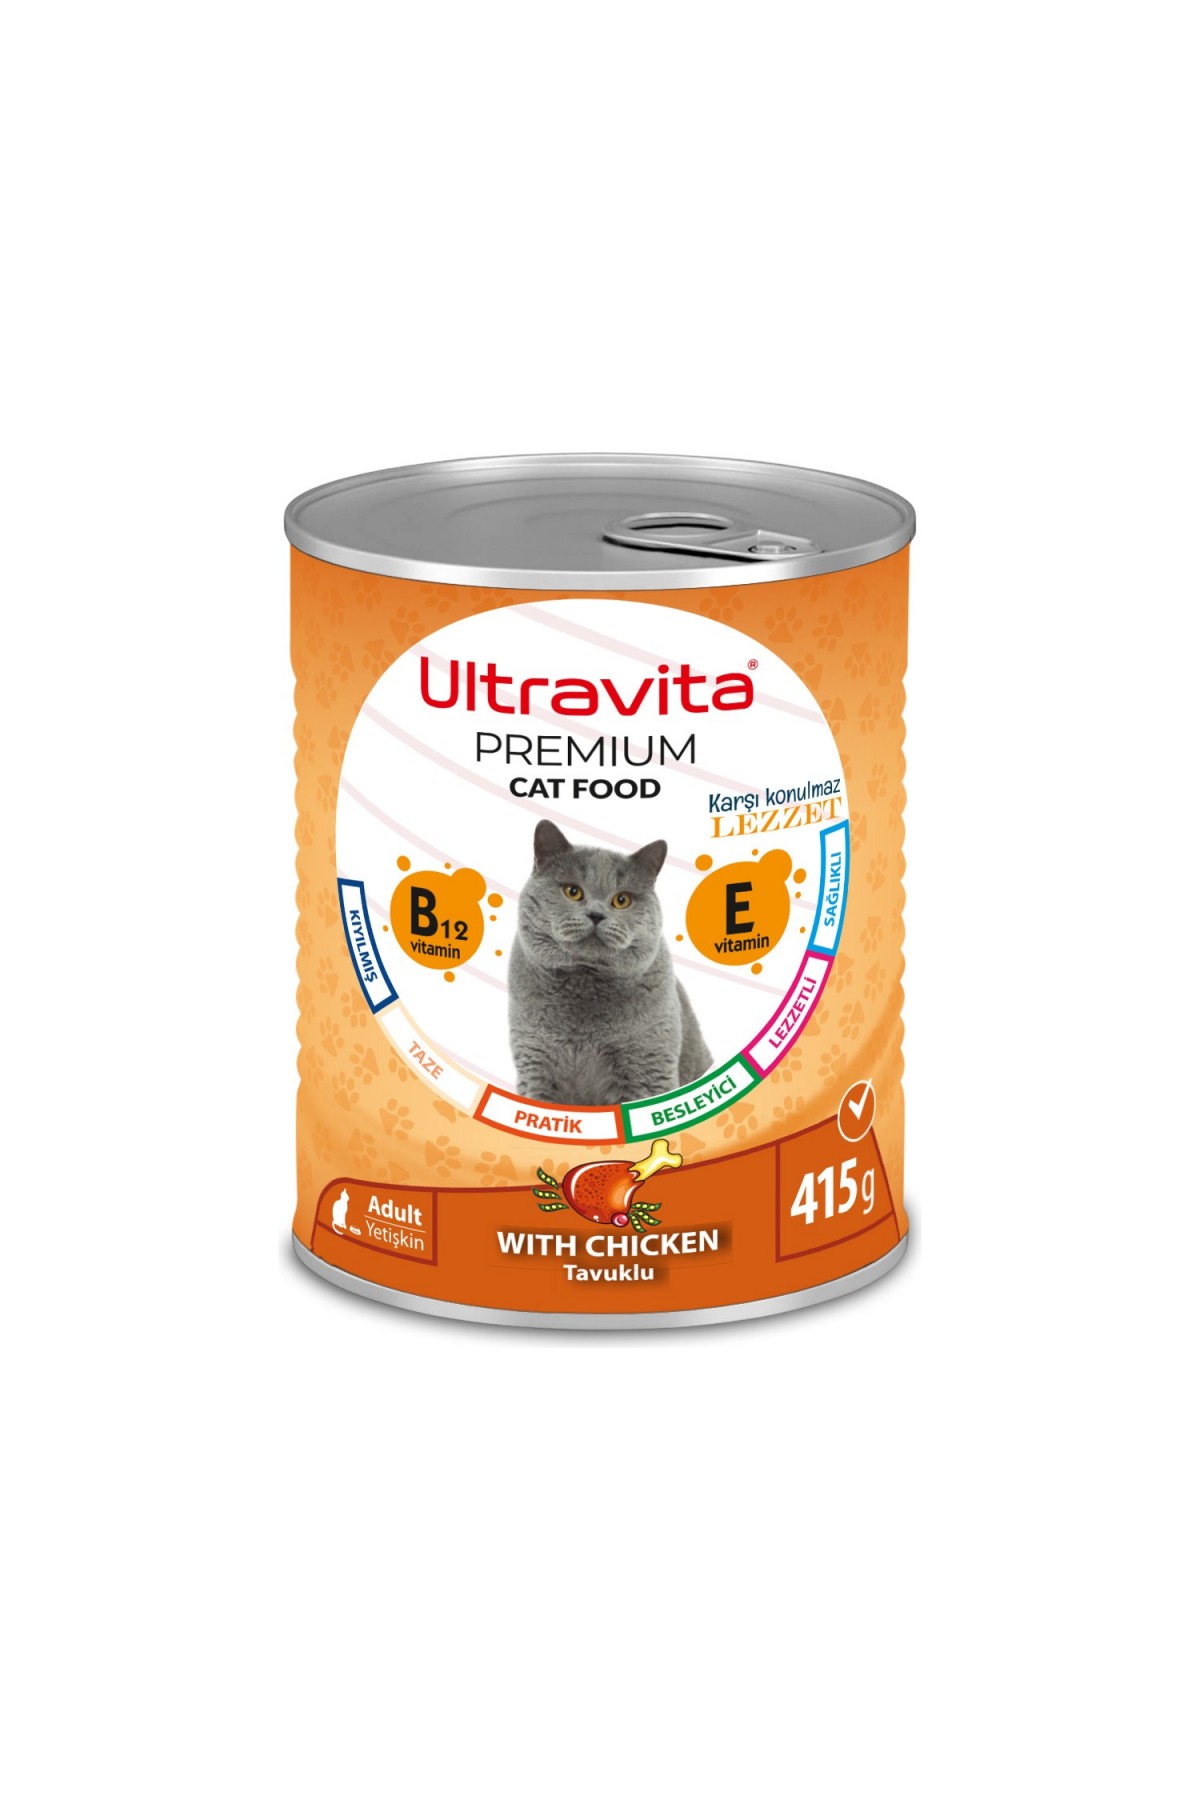 Ultravita Premium Yüksek Proteinli Tavuk Etli Konserve Yaş Kedi Maması 415GRX24 Adet